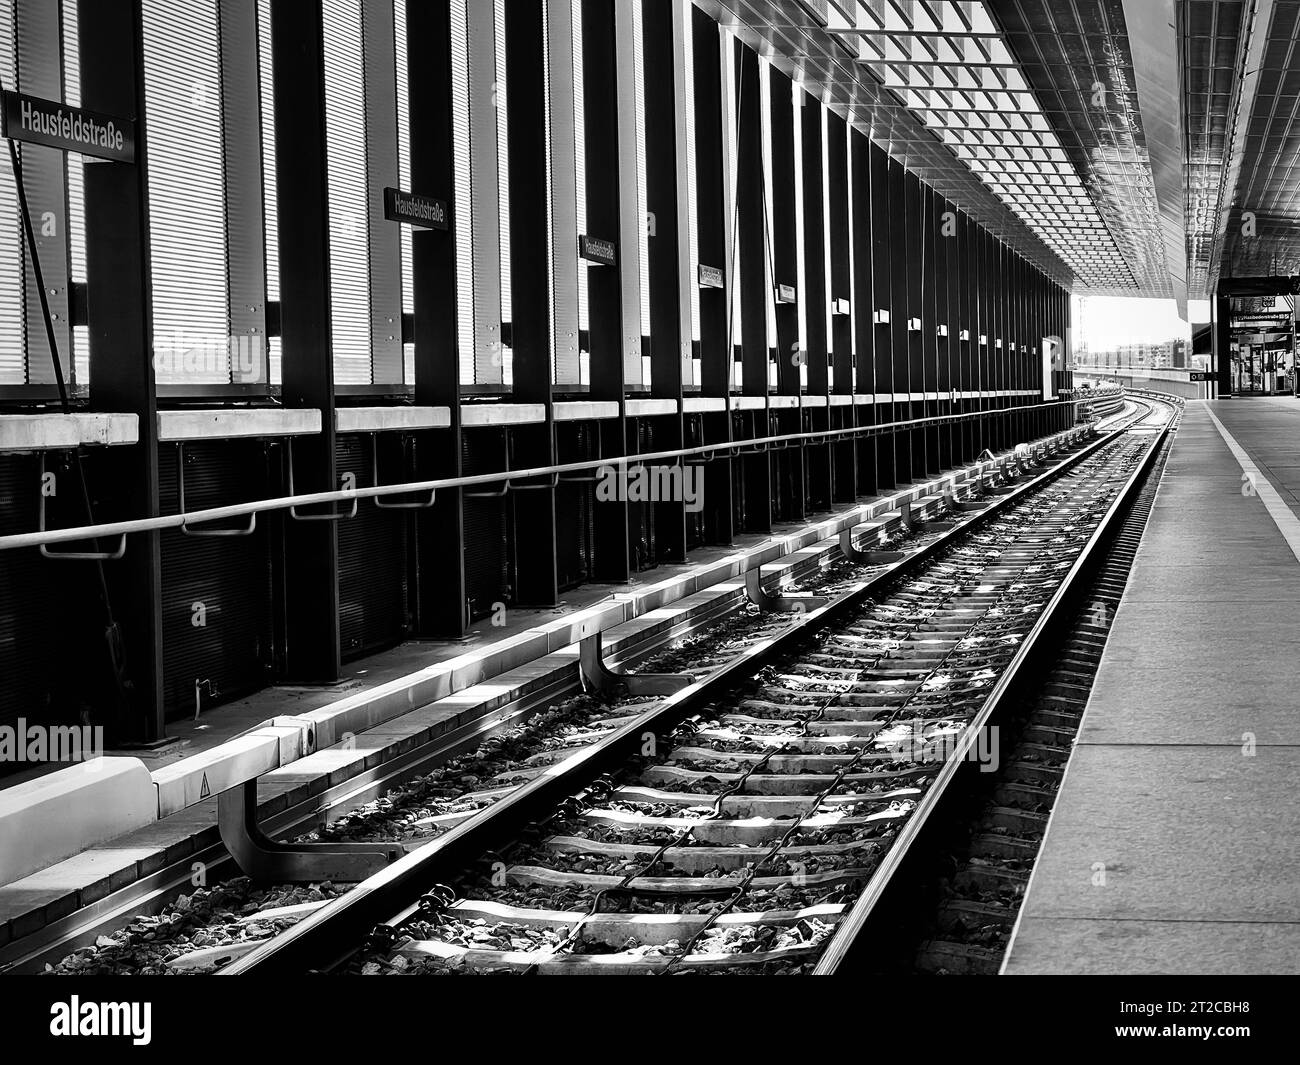 Ein Bahnhof mit einem einzigen Gleis, das sich in der Ferne erstreckt, in Graustufen Stockfoto